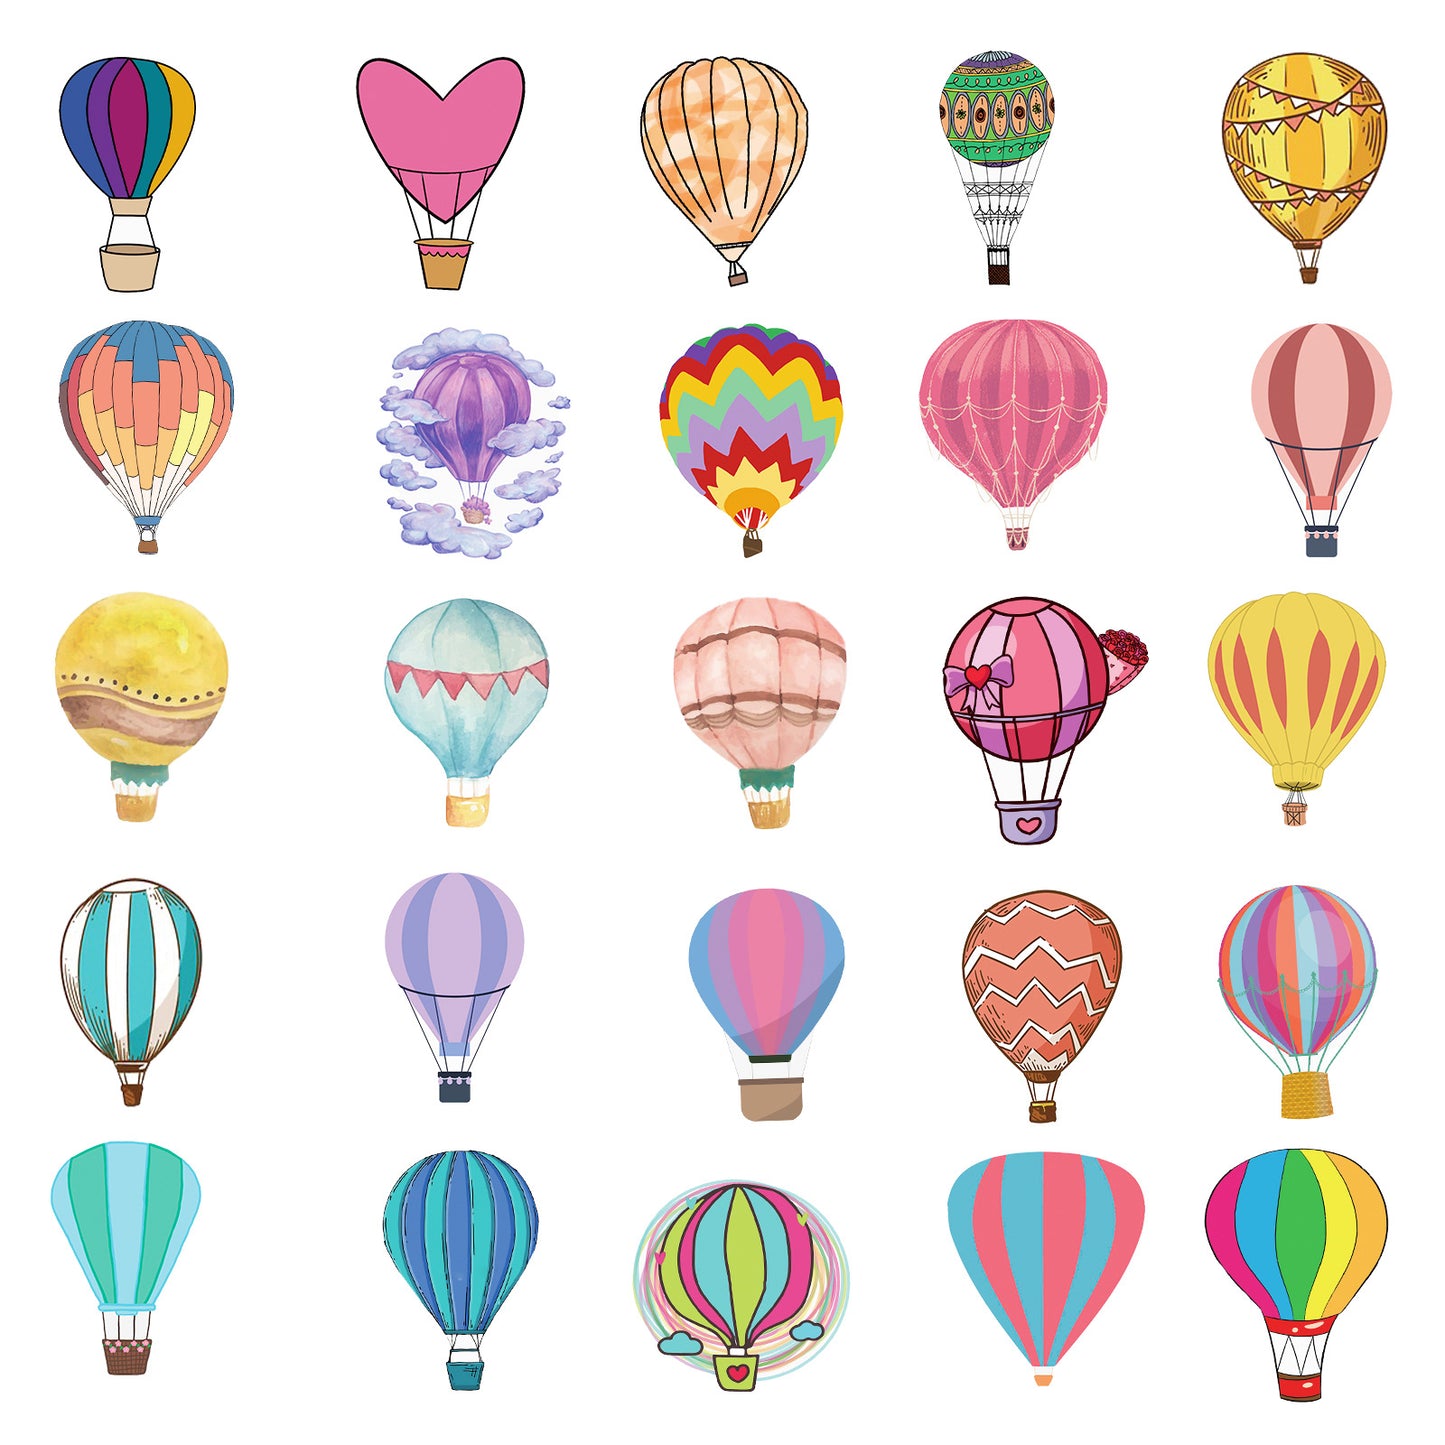 Samolepky Létajicí balón 50ks - 50 odlišných samolepek